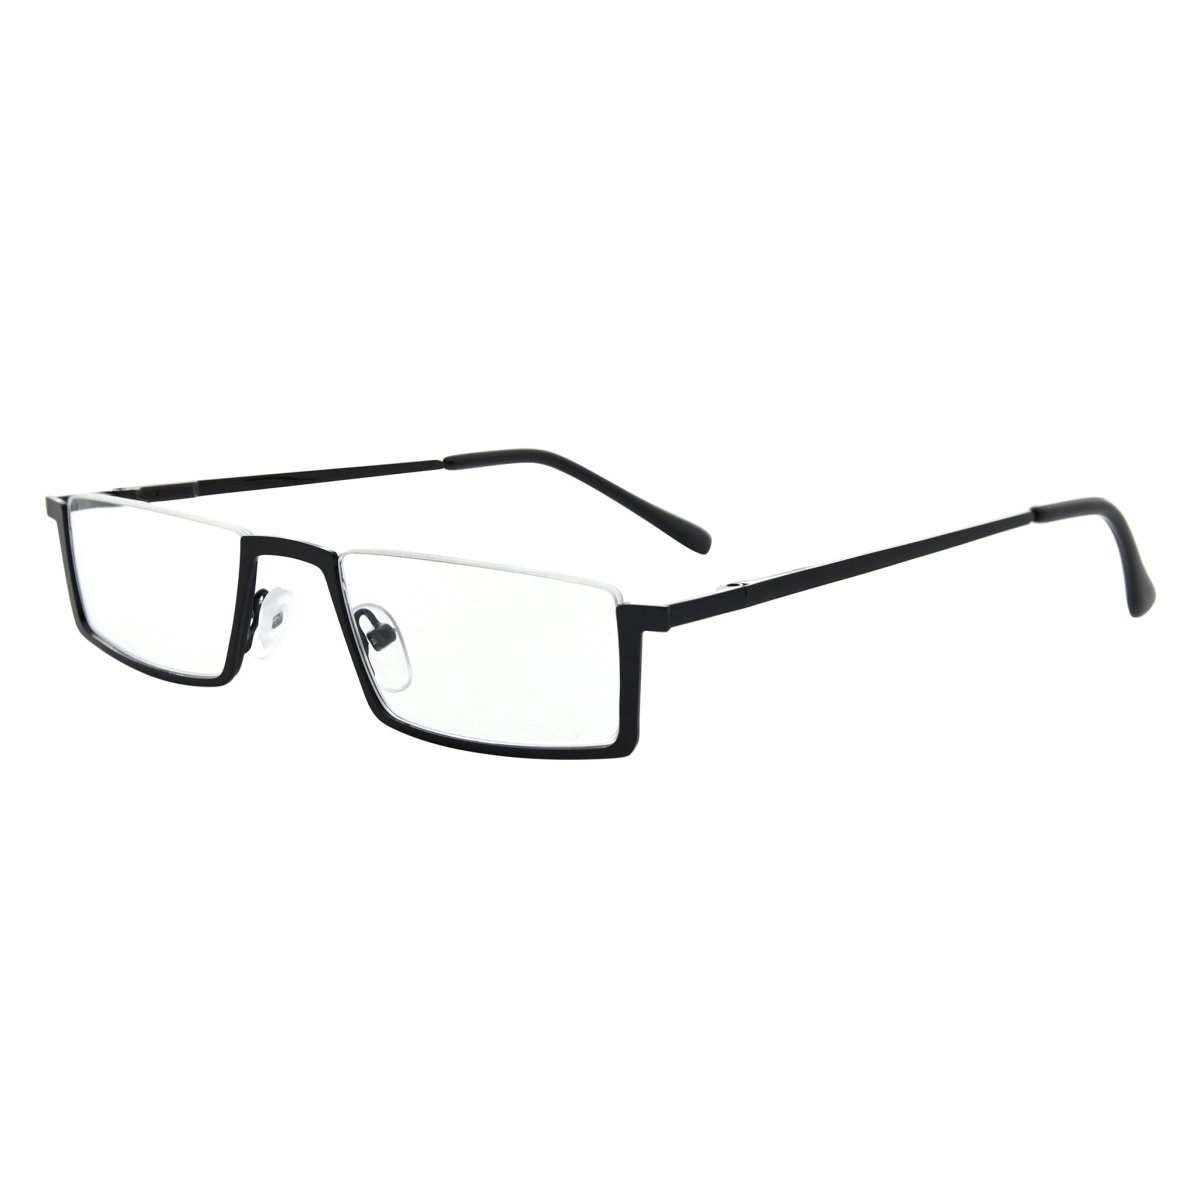 Accessories, Sold Prescription Half Rim Reading Glasses